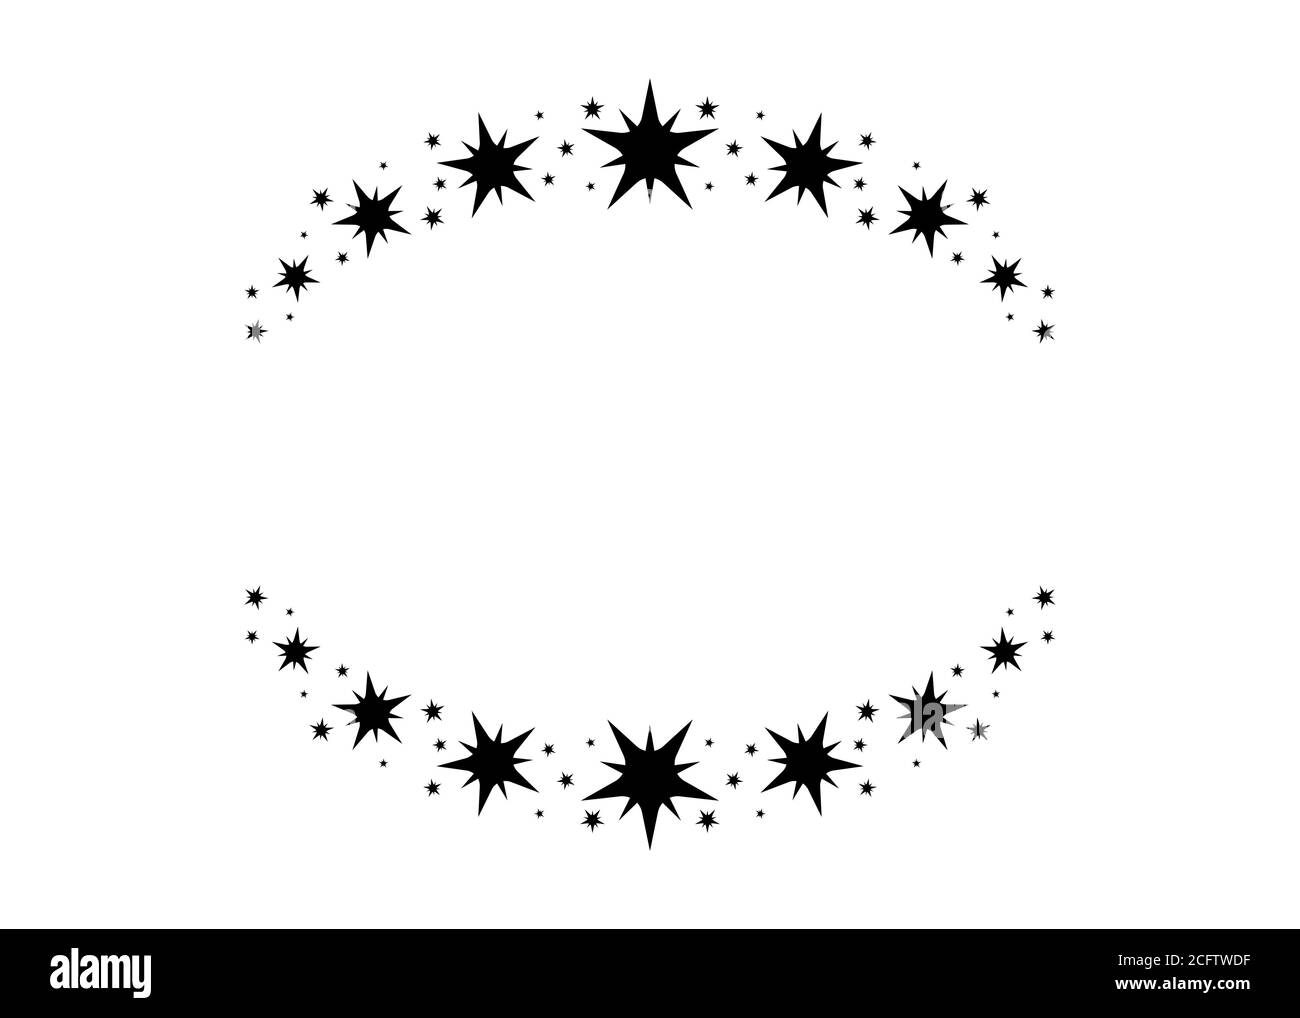 Vektorkreis Sternrahmen. Kranz für Design, Logo-Vorlage. Sternenstaub, Sterne, Sternenhimmel. Runder Rahmen mit Sternen und Glitzerpunkten auf weißem Hintergrund. Stock Vektor